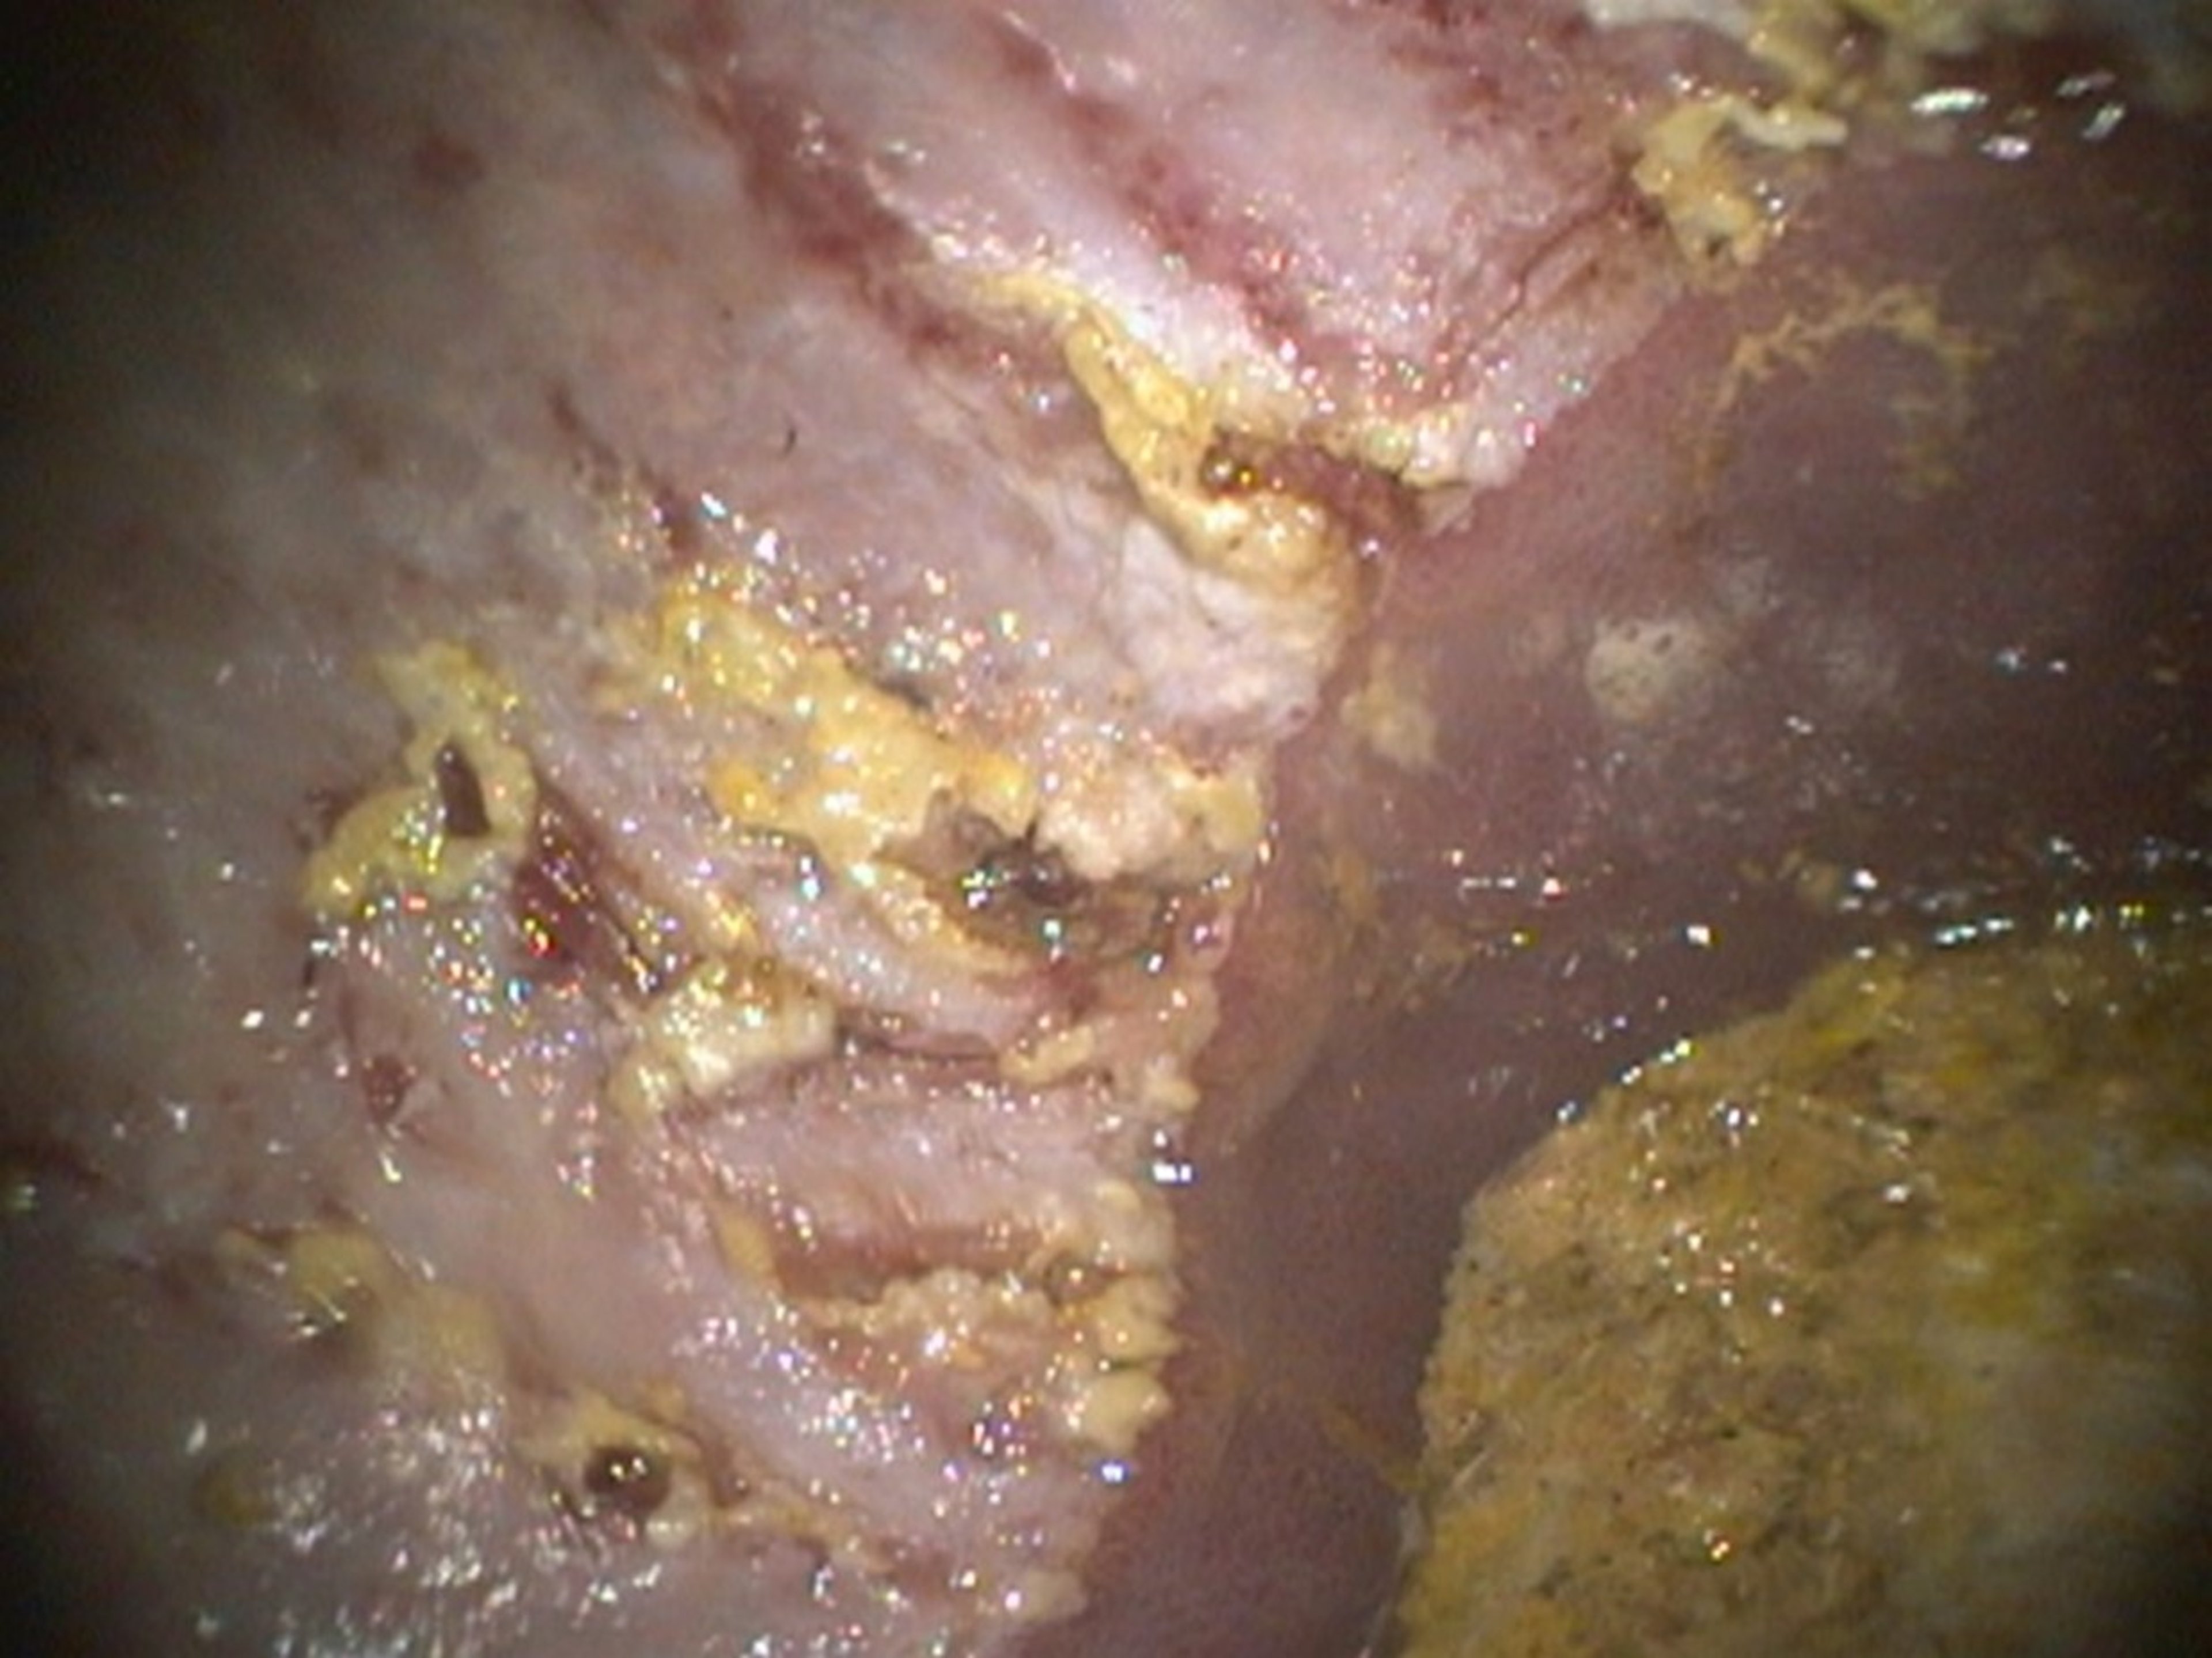 Severe ulceration, nonglandular squamous mucosa, adult horse